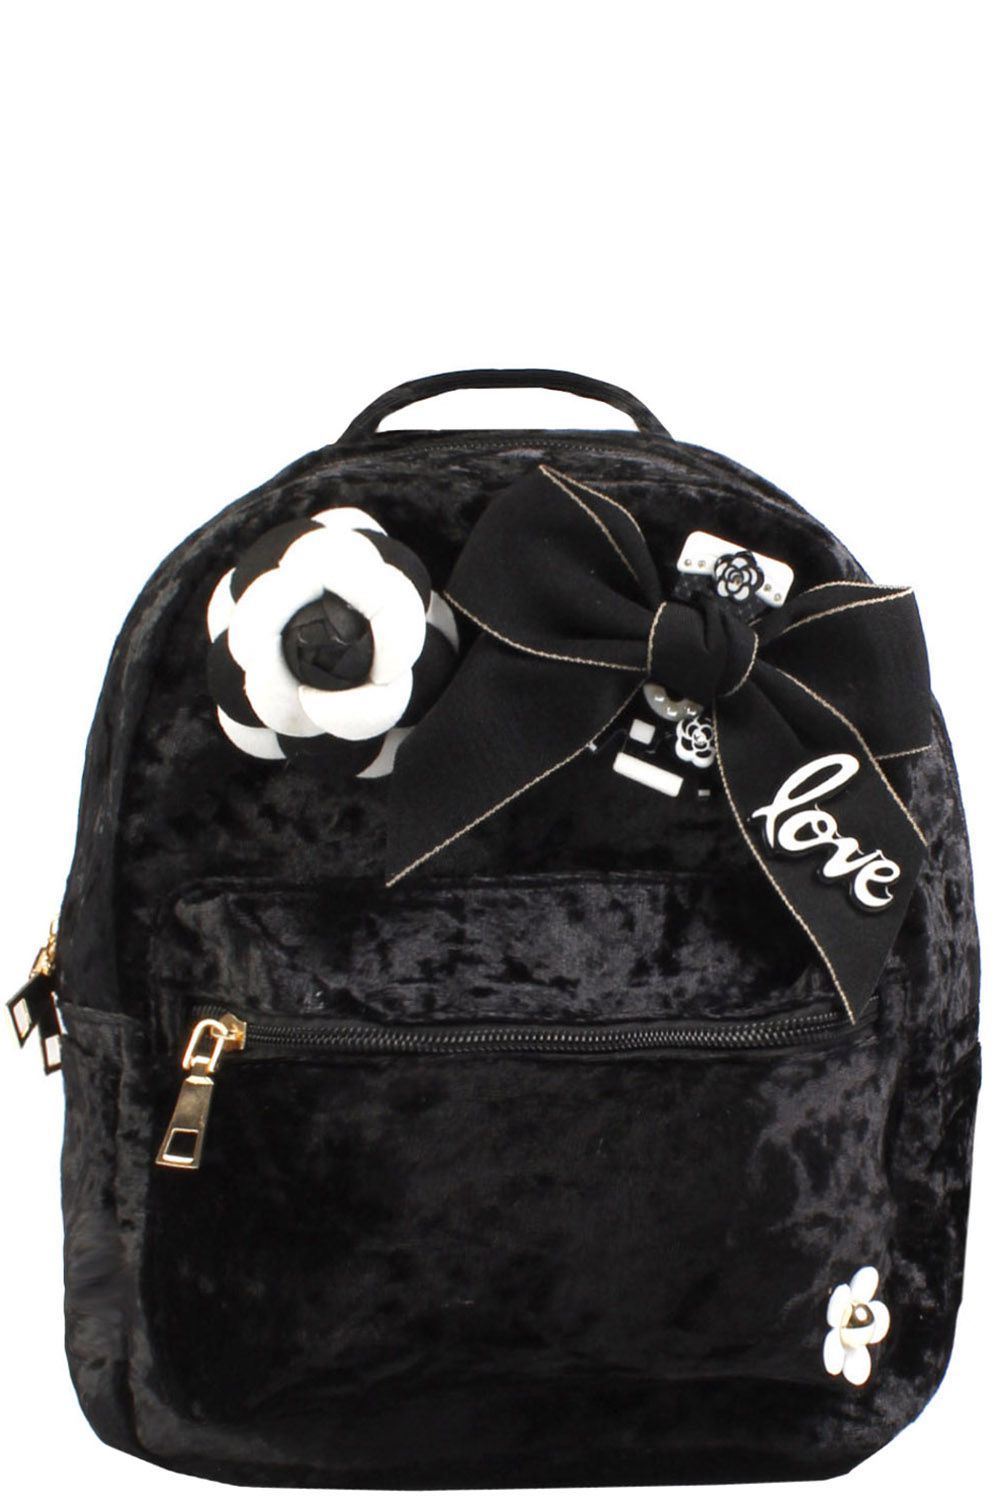 Рюкзак Multibrand, размер UNI, цвет черный 6110 - фото 1